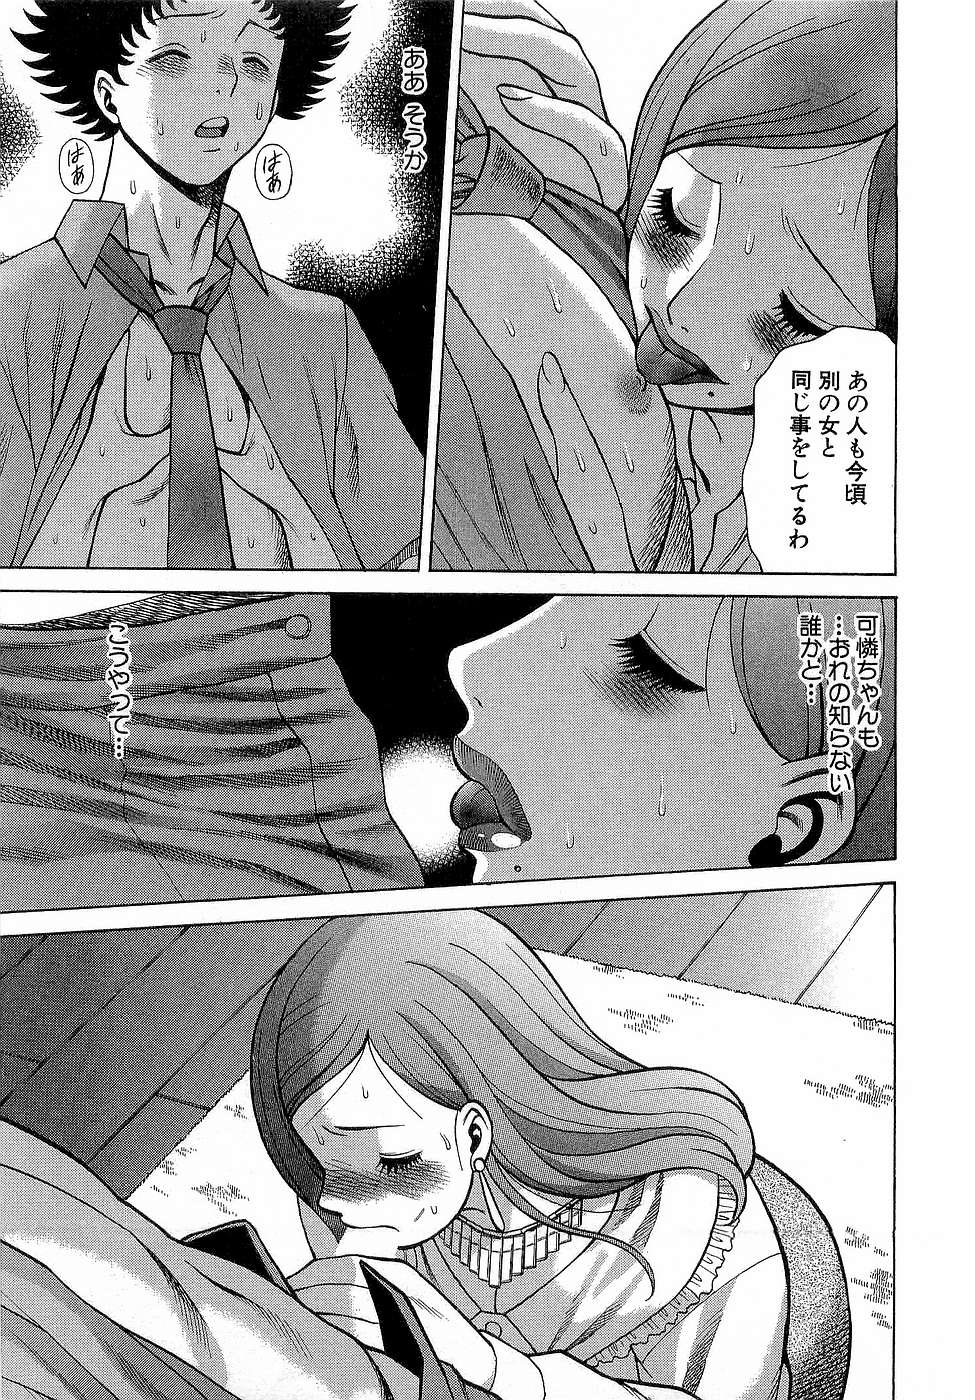 [Tamaki Nozomu] Nanairo Karen x3 Cosplay Complex page 46 full